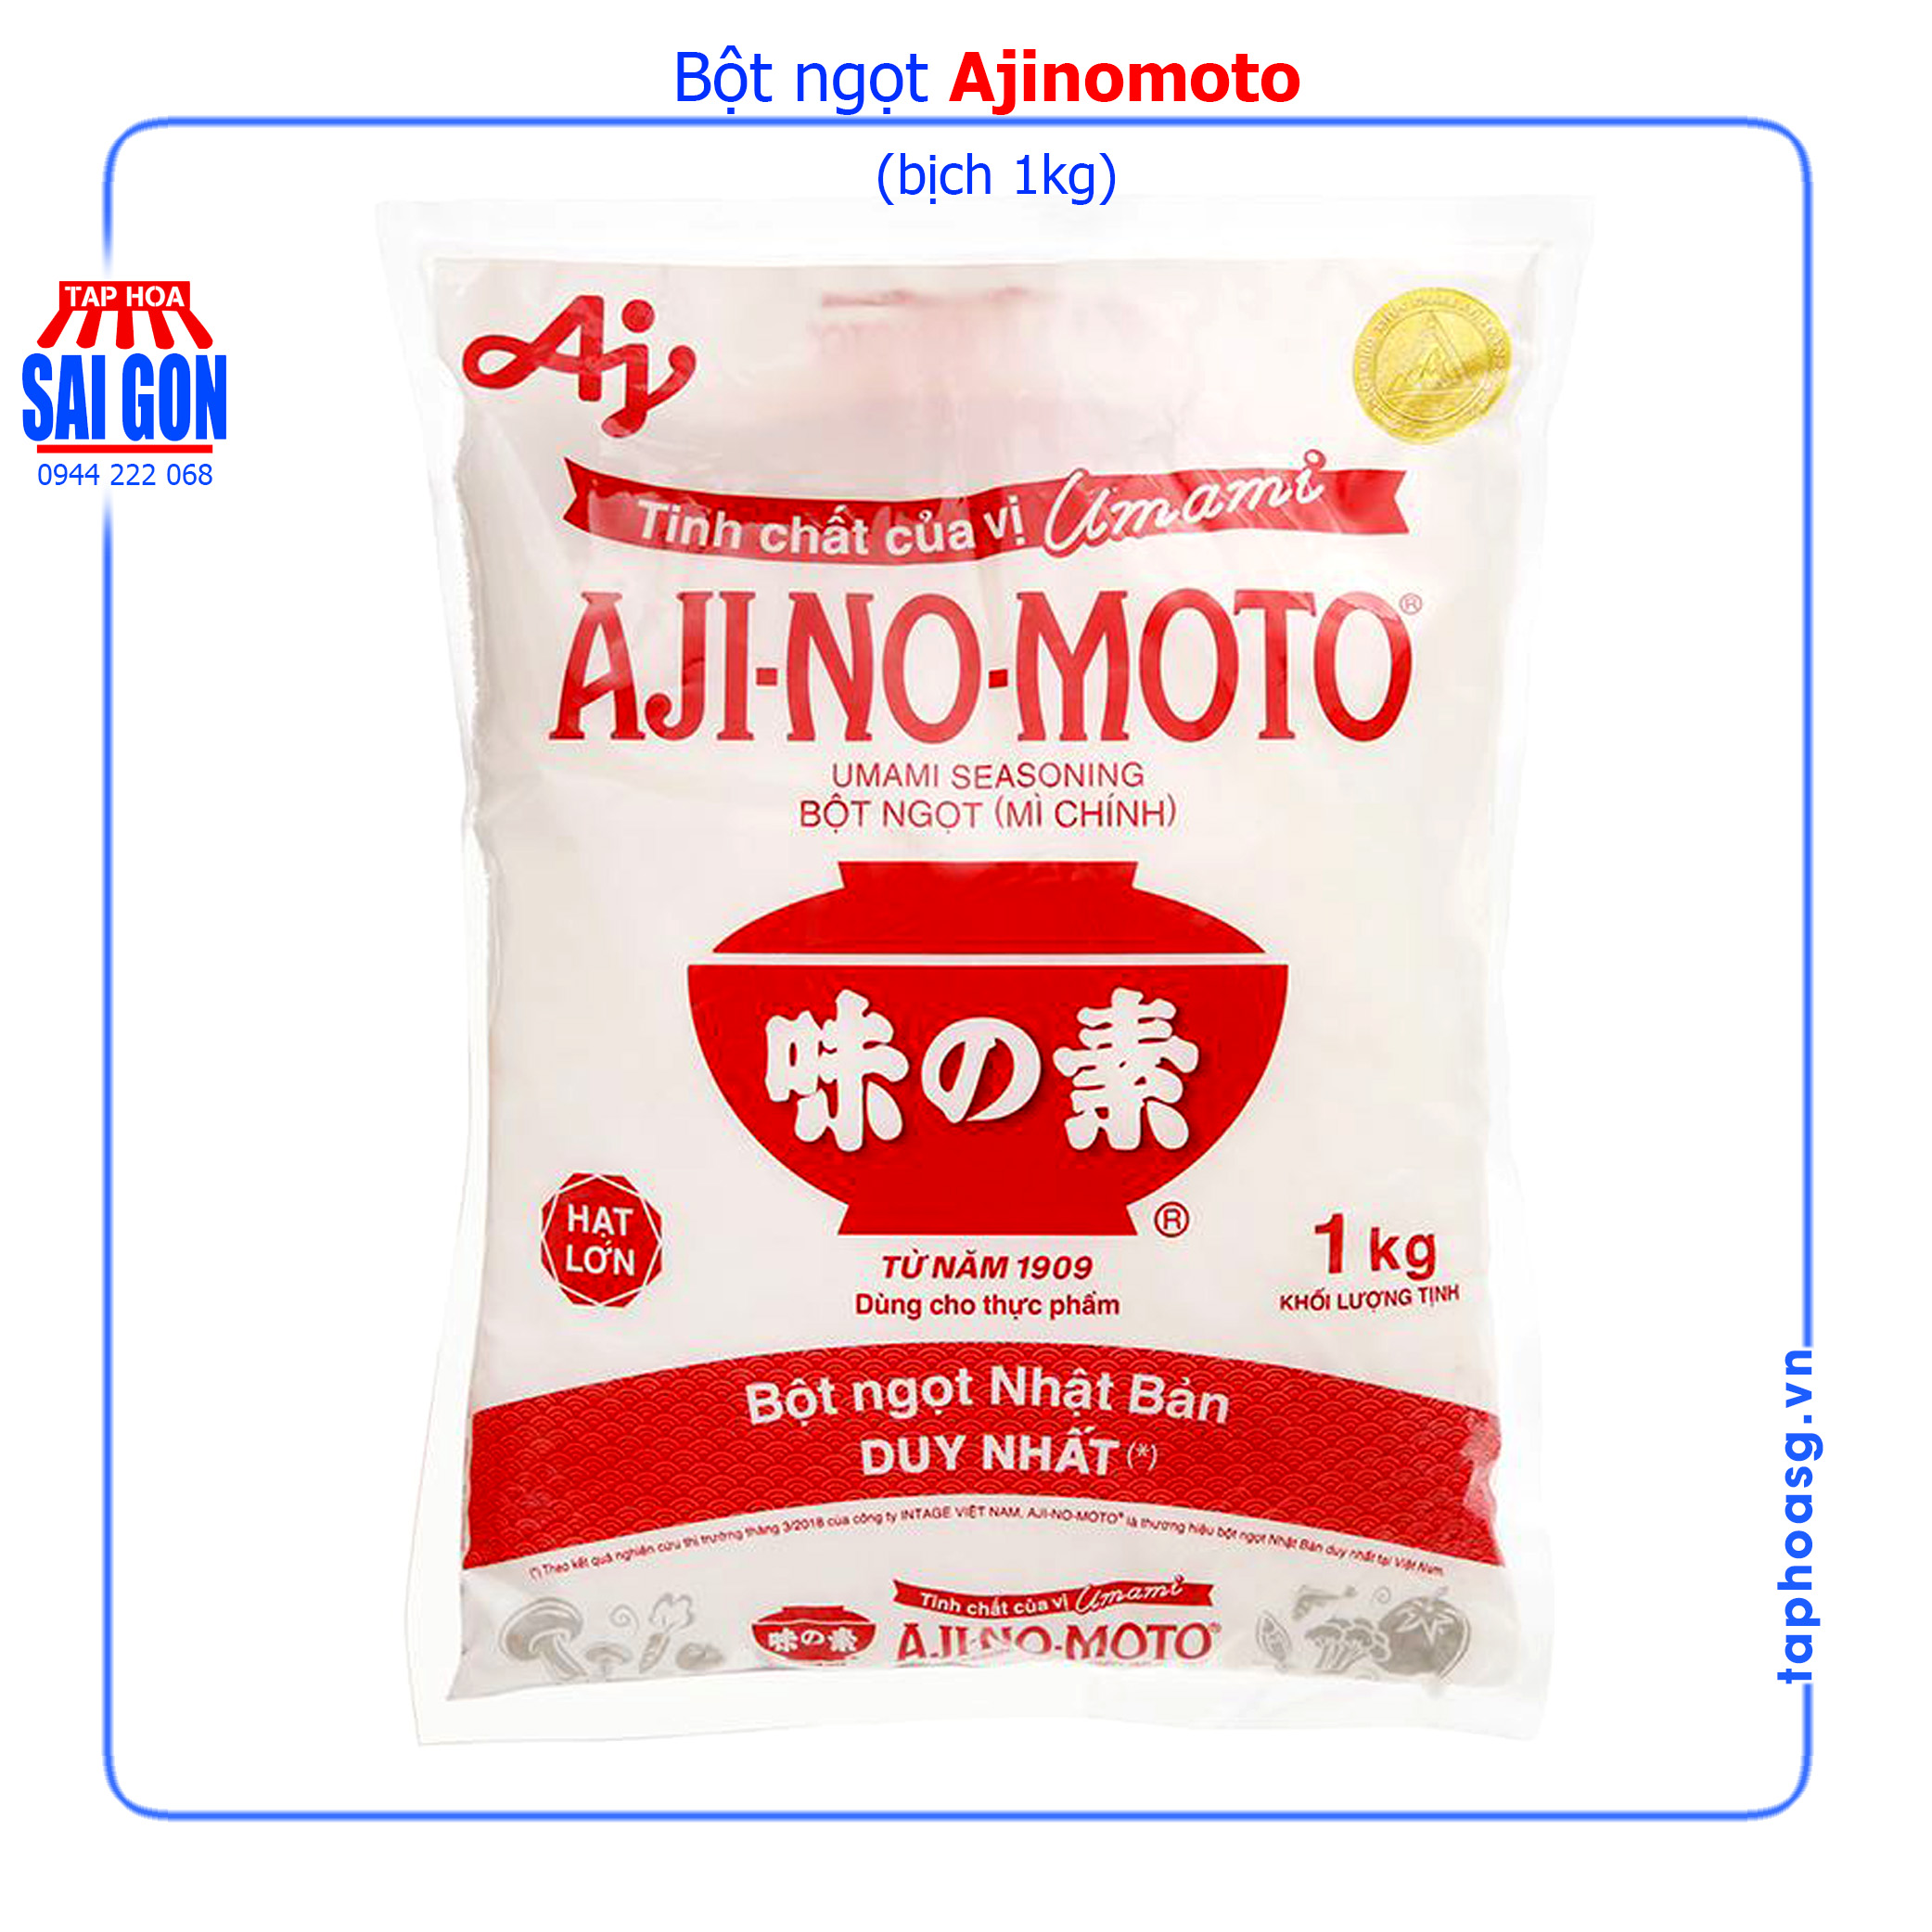 Bột ngọt Ajinomoto bịch 454g, 1kg giúp món ăn thêm ngon, hấp dẫn và đậm vị